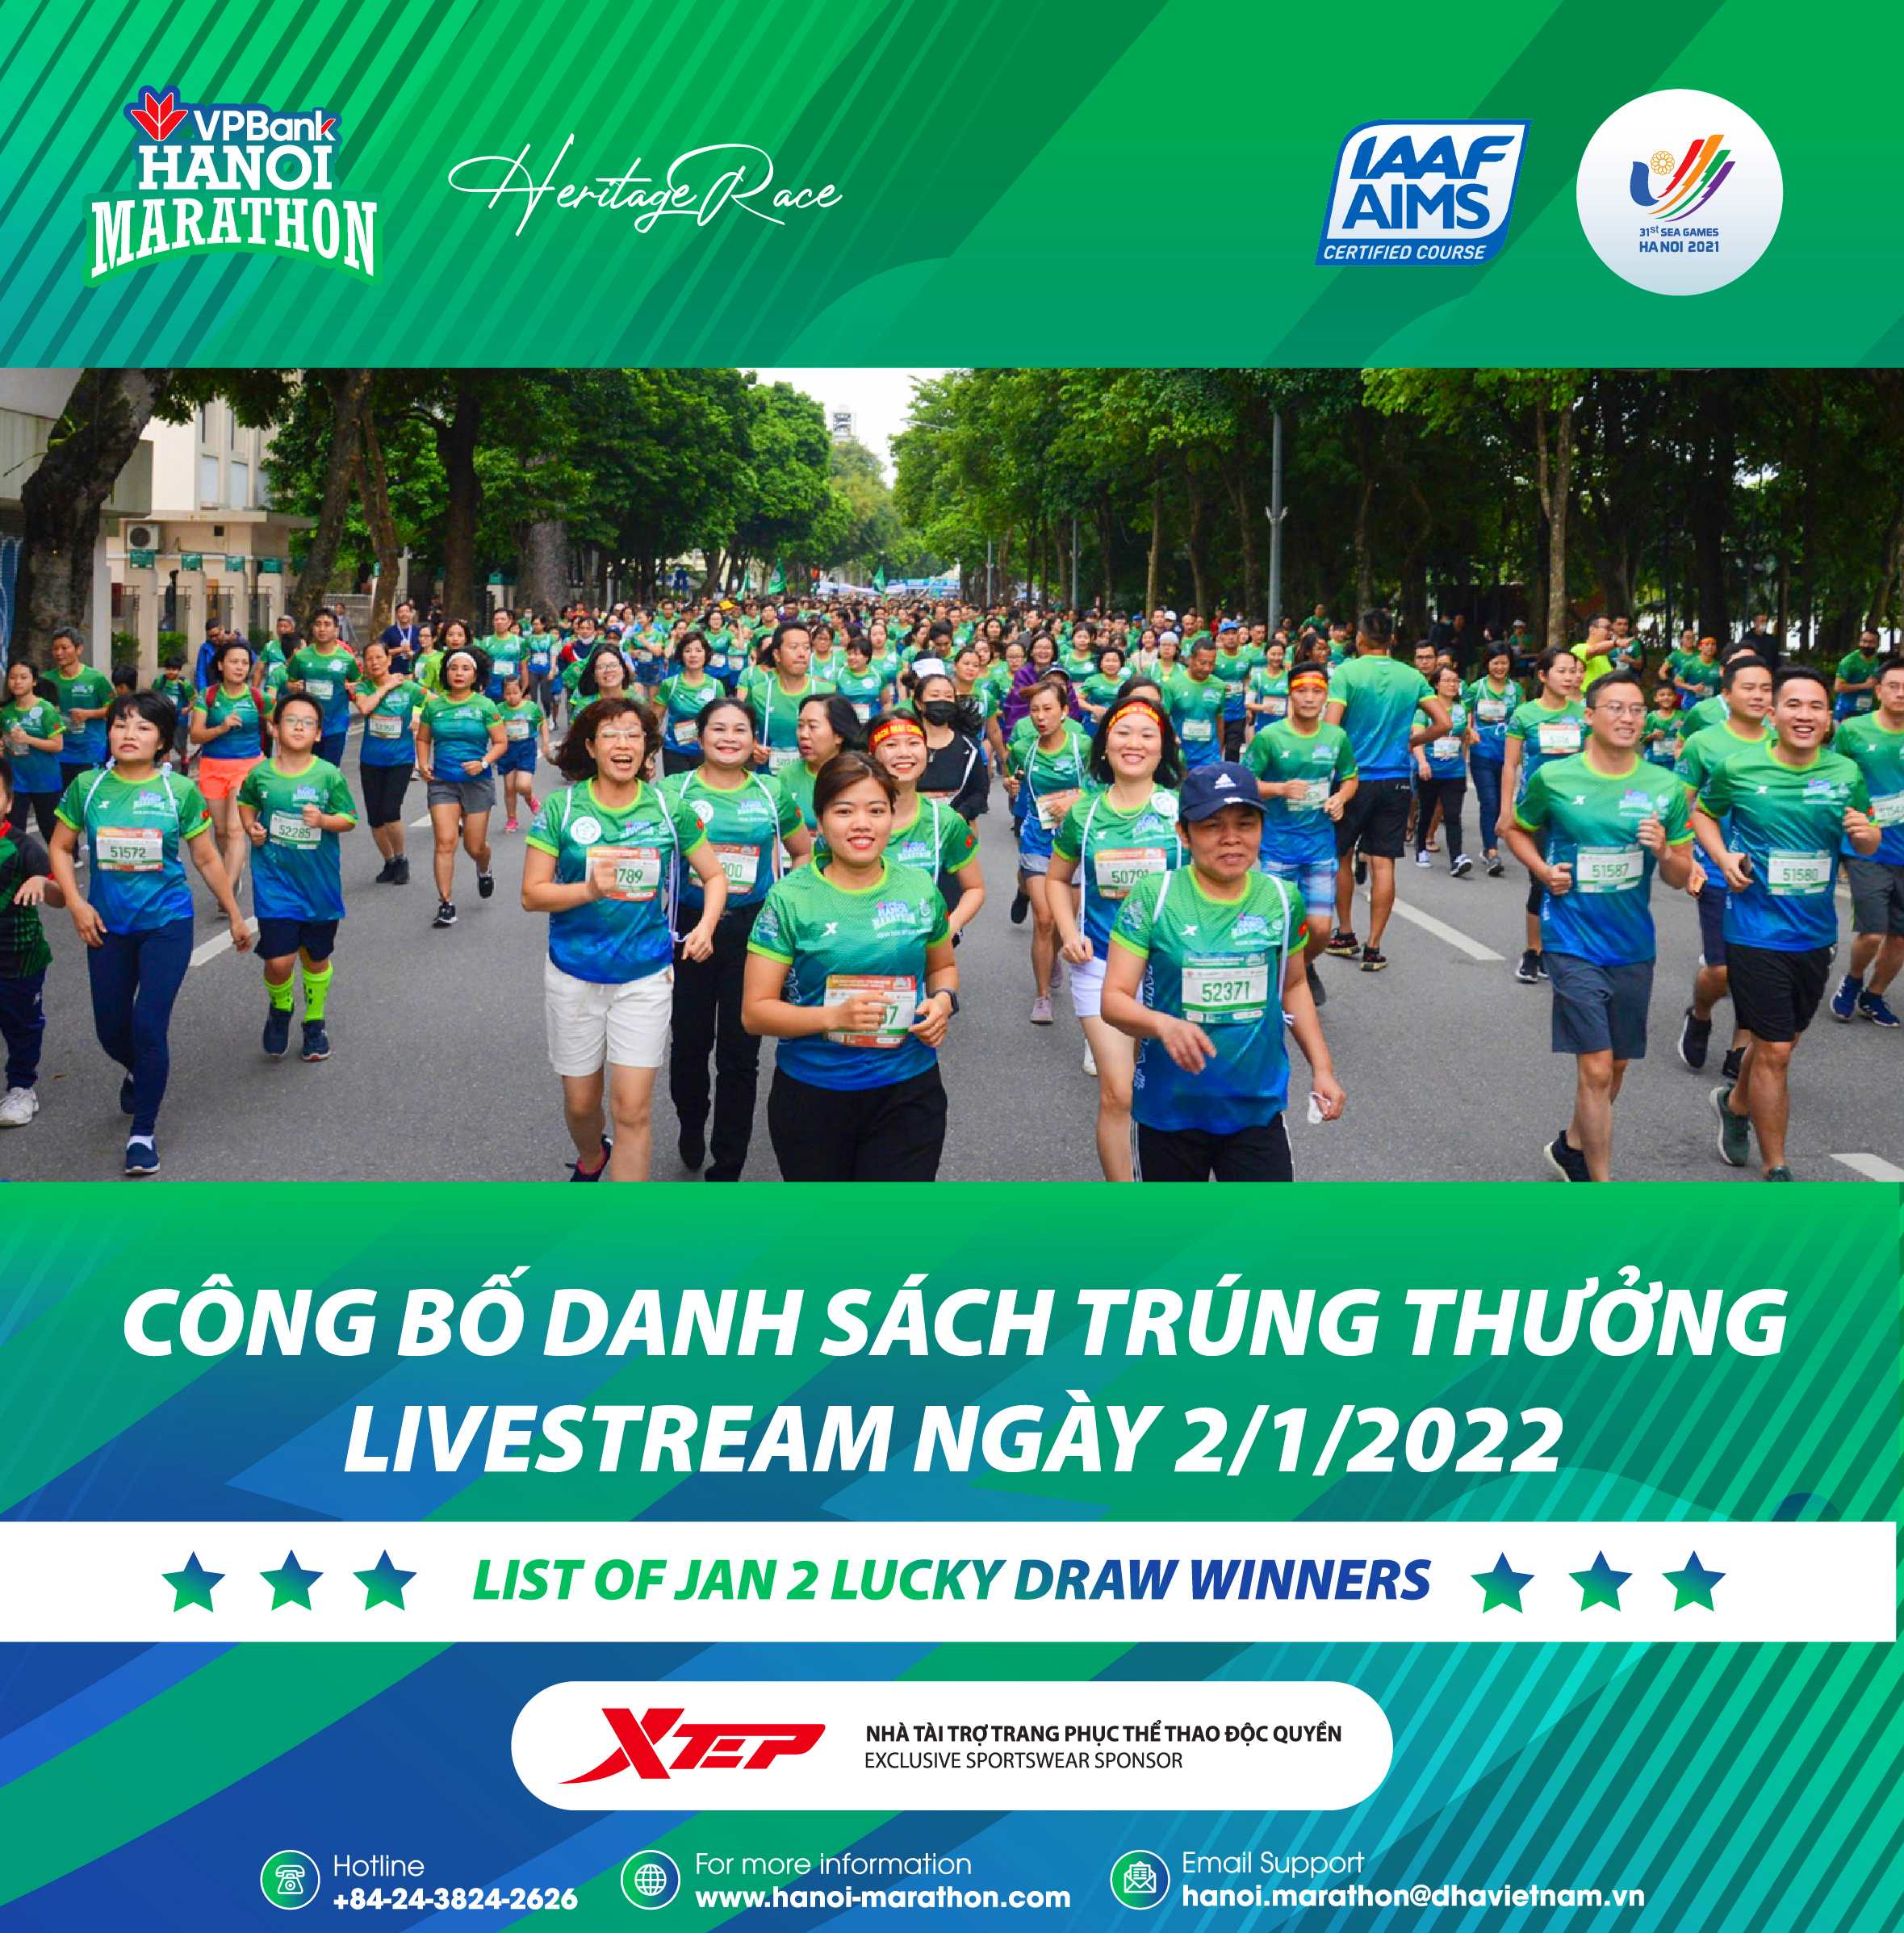 Quảng Bình Runners Vươn Lên Dẫn Đầu Virtual VPBank Hanoi Marathon